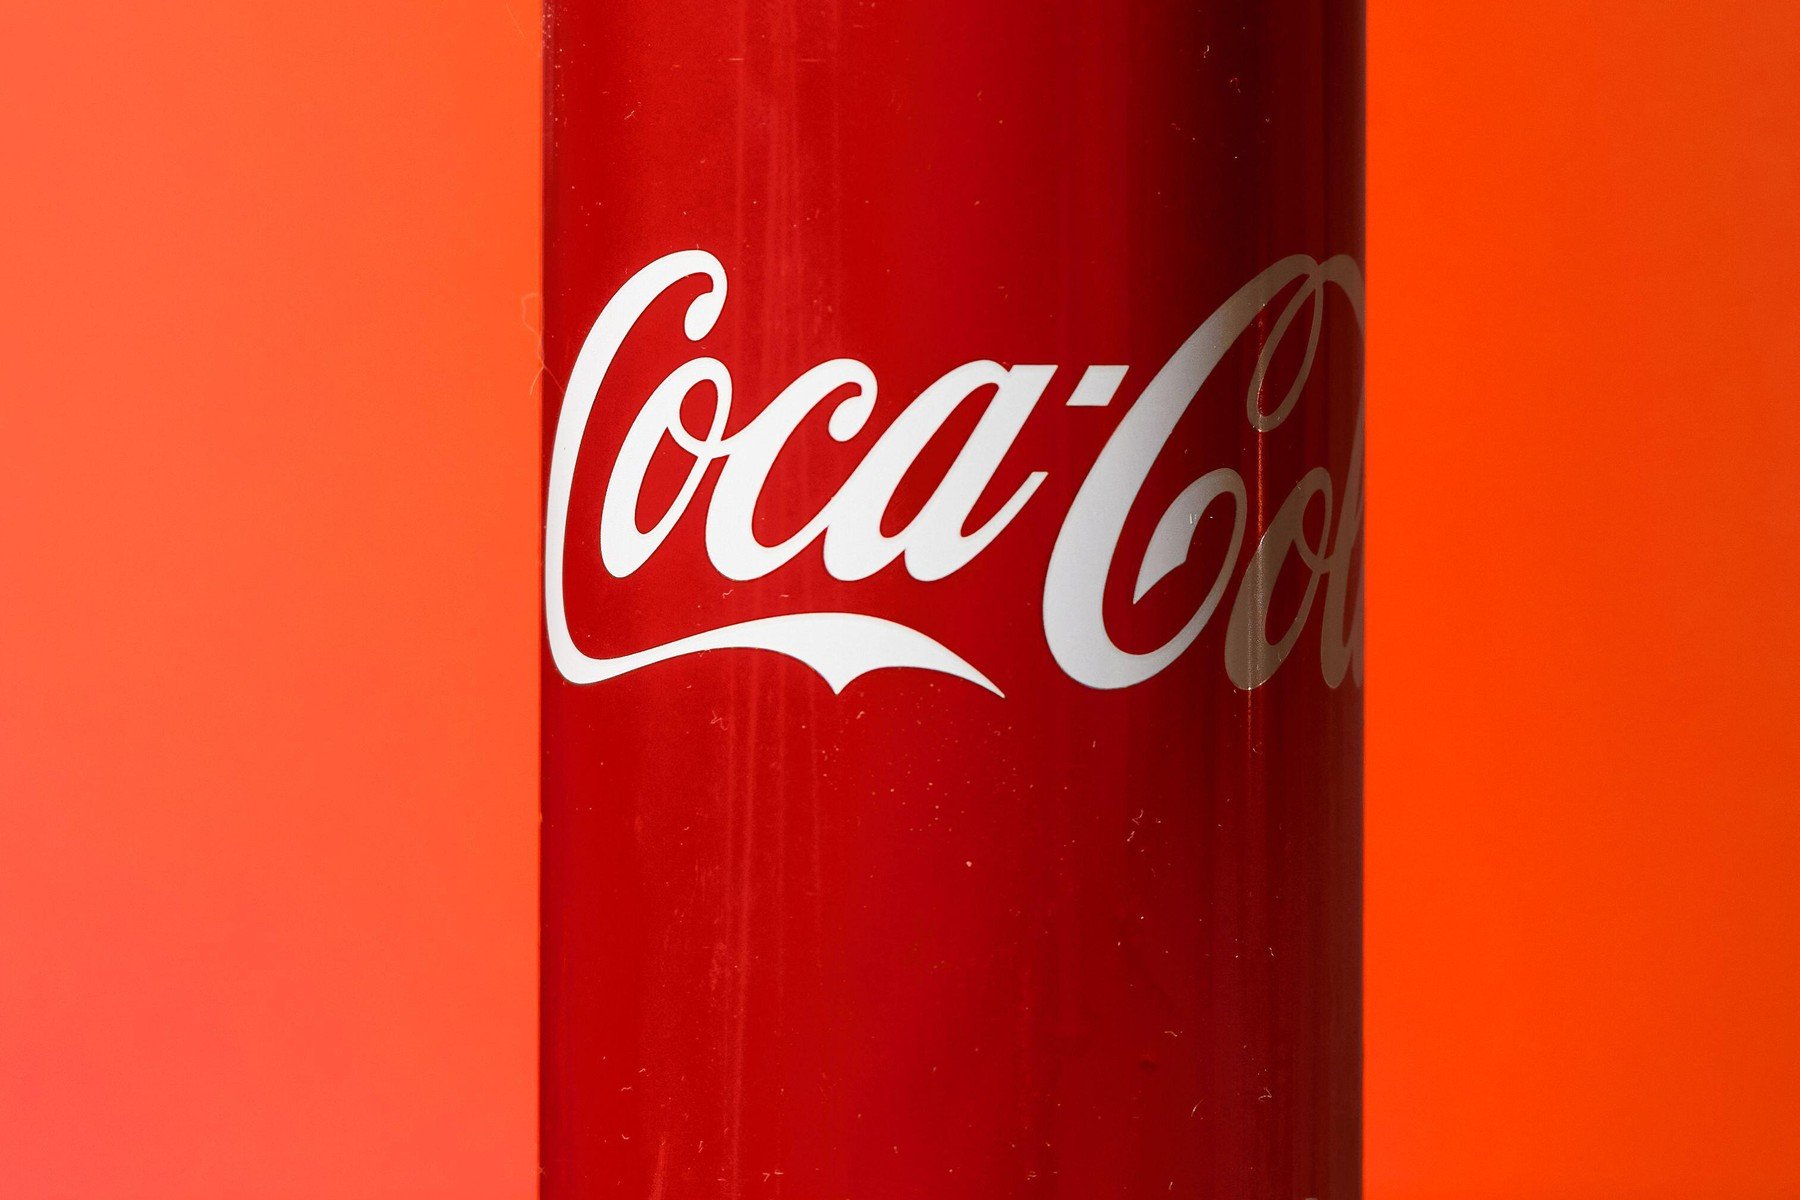 Őrület: új nyári ízt dob piacra a Coca-Cola